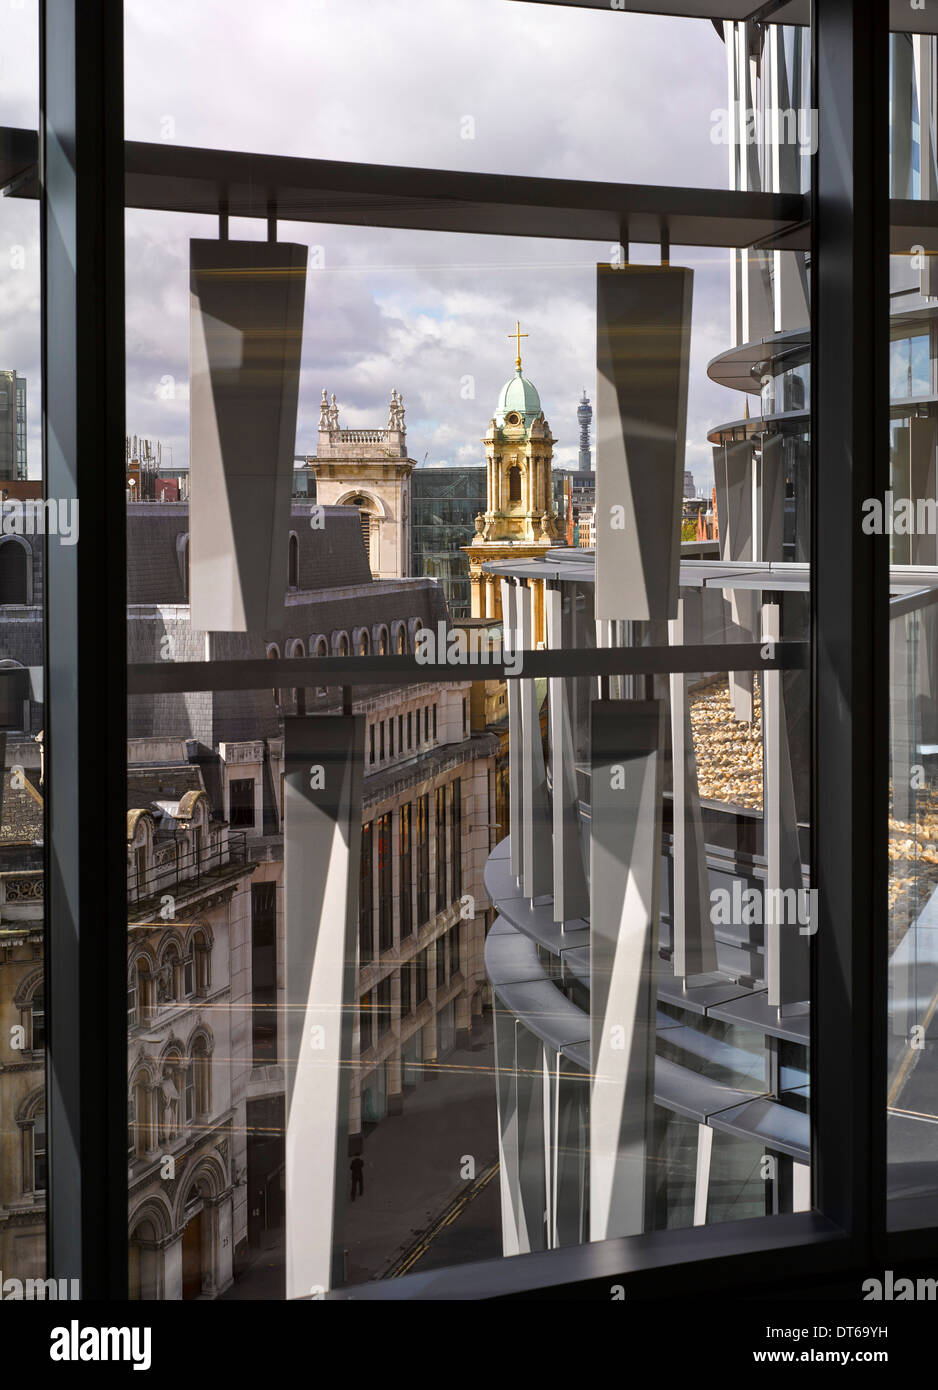 60 London, London, Vereinigtes Königreich. Architekt: Kohn Pedersen Fox Associates (KPF), 2014. Detail der Fassade von innen. Stockfoto